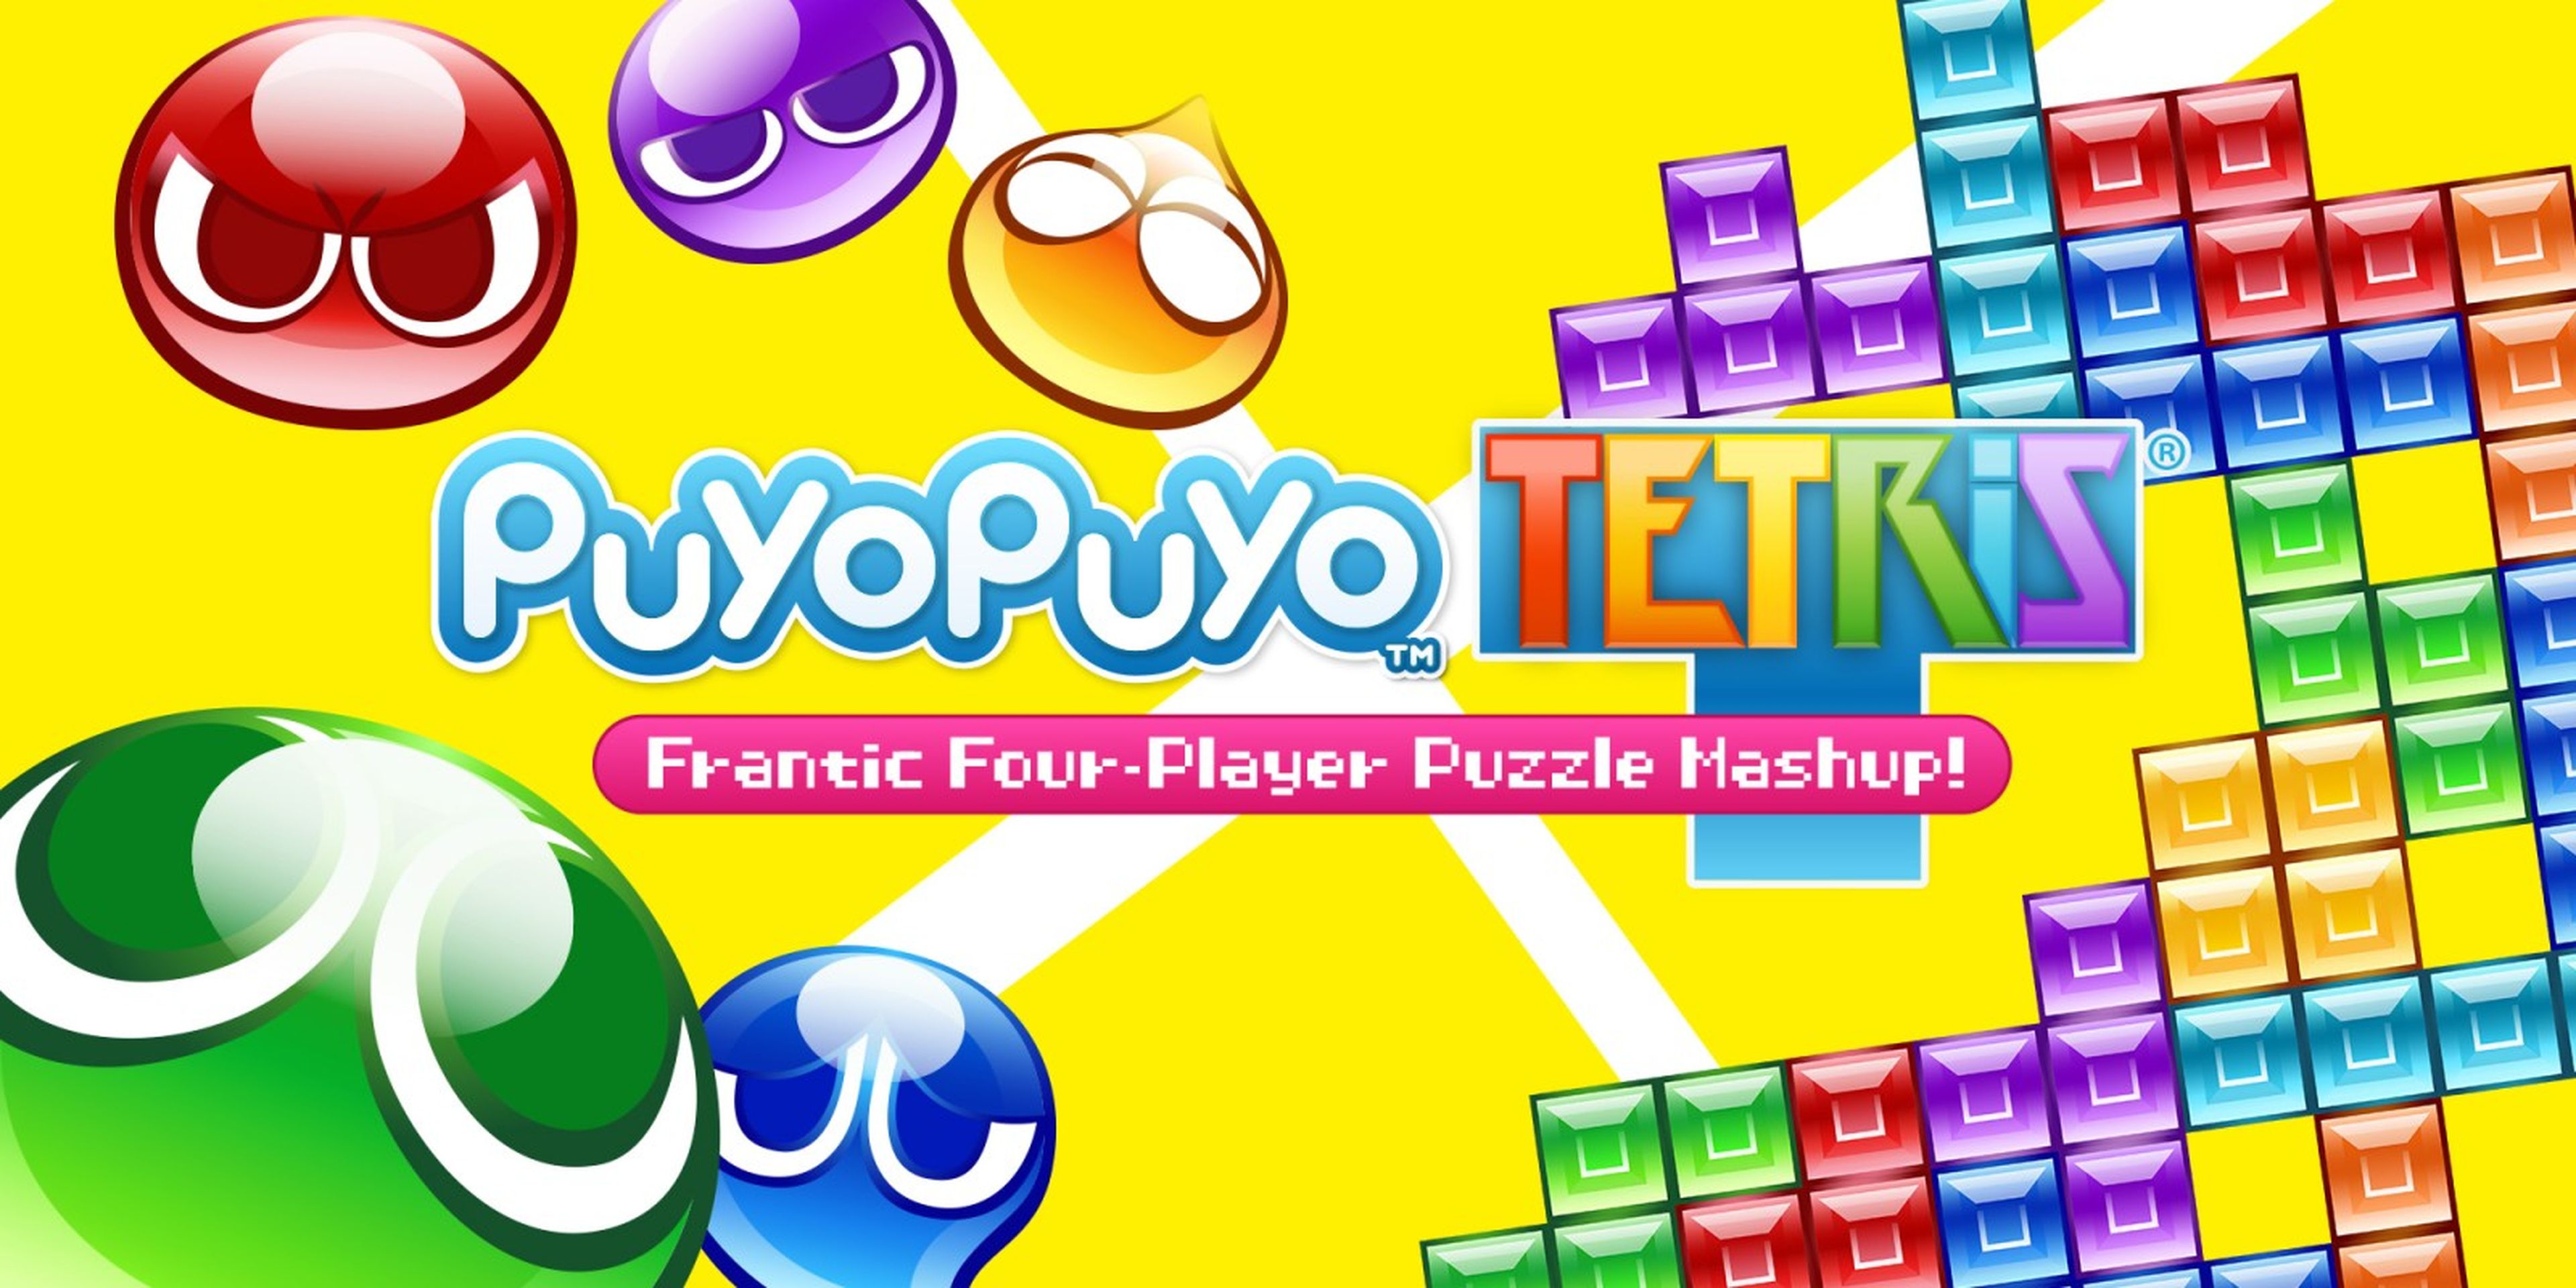 PuyoPuyo Tetris